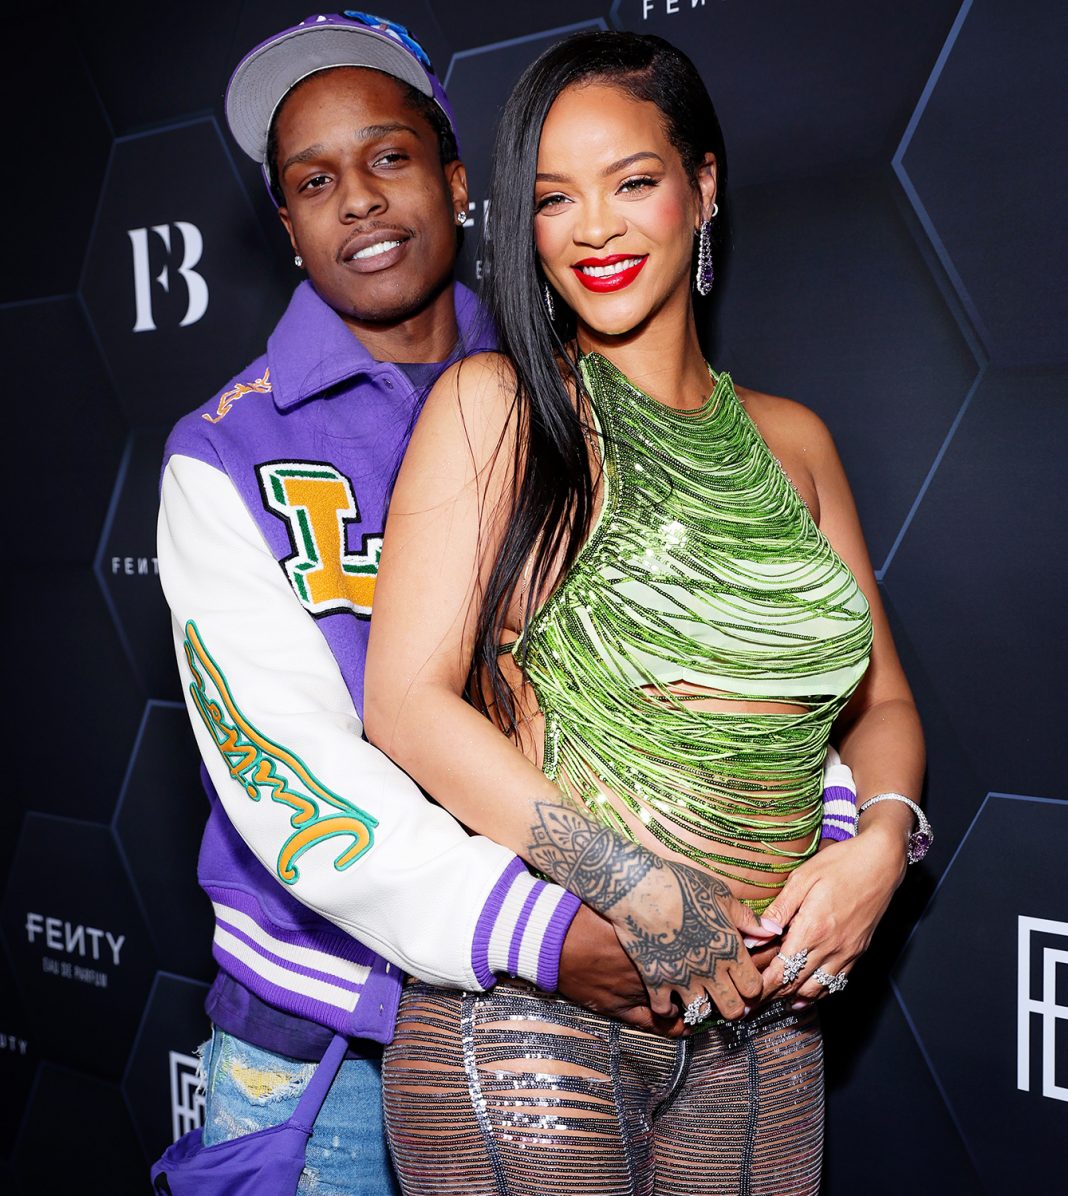 ¿Rihanna y A$AP Rocky se separaron? Los rumores dicen que ella lo atrapó siendo infiel